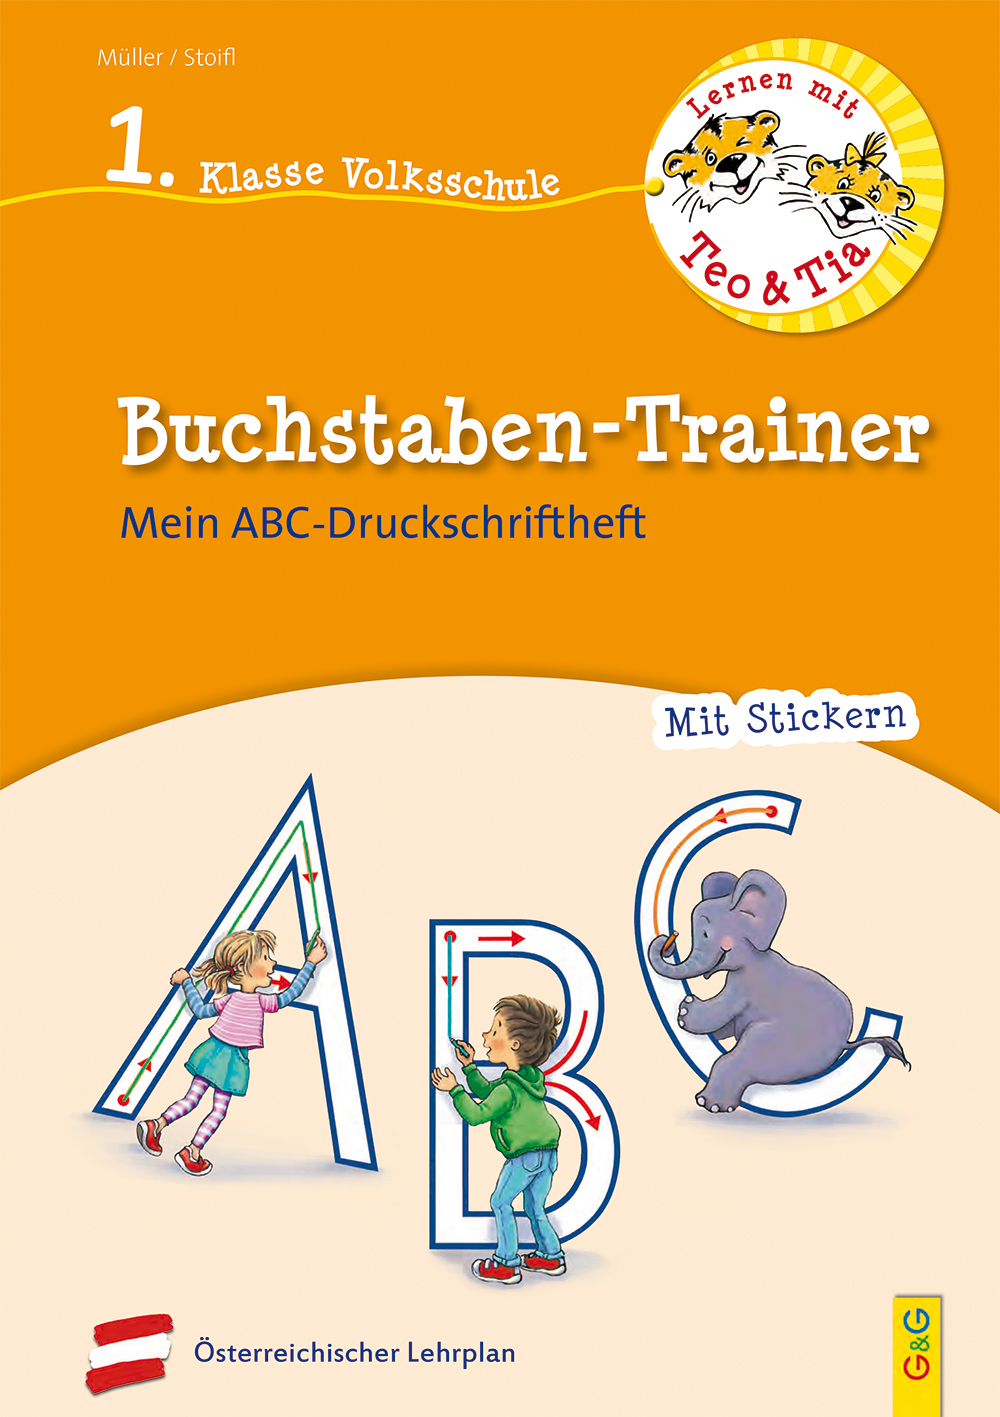 Praktisch didaktisch  Kinderbuch und Jugendbuchverlag G&G